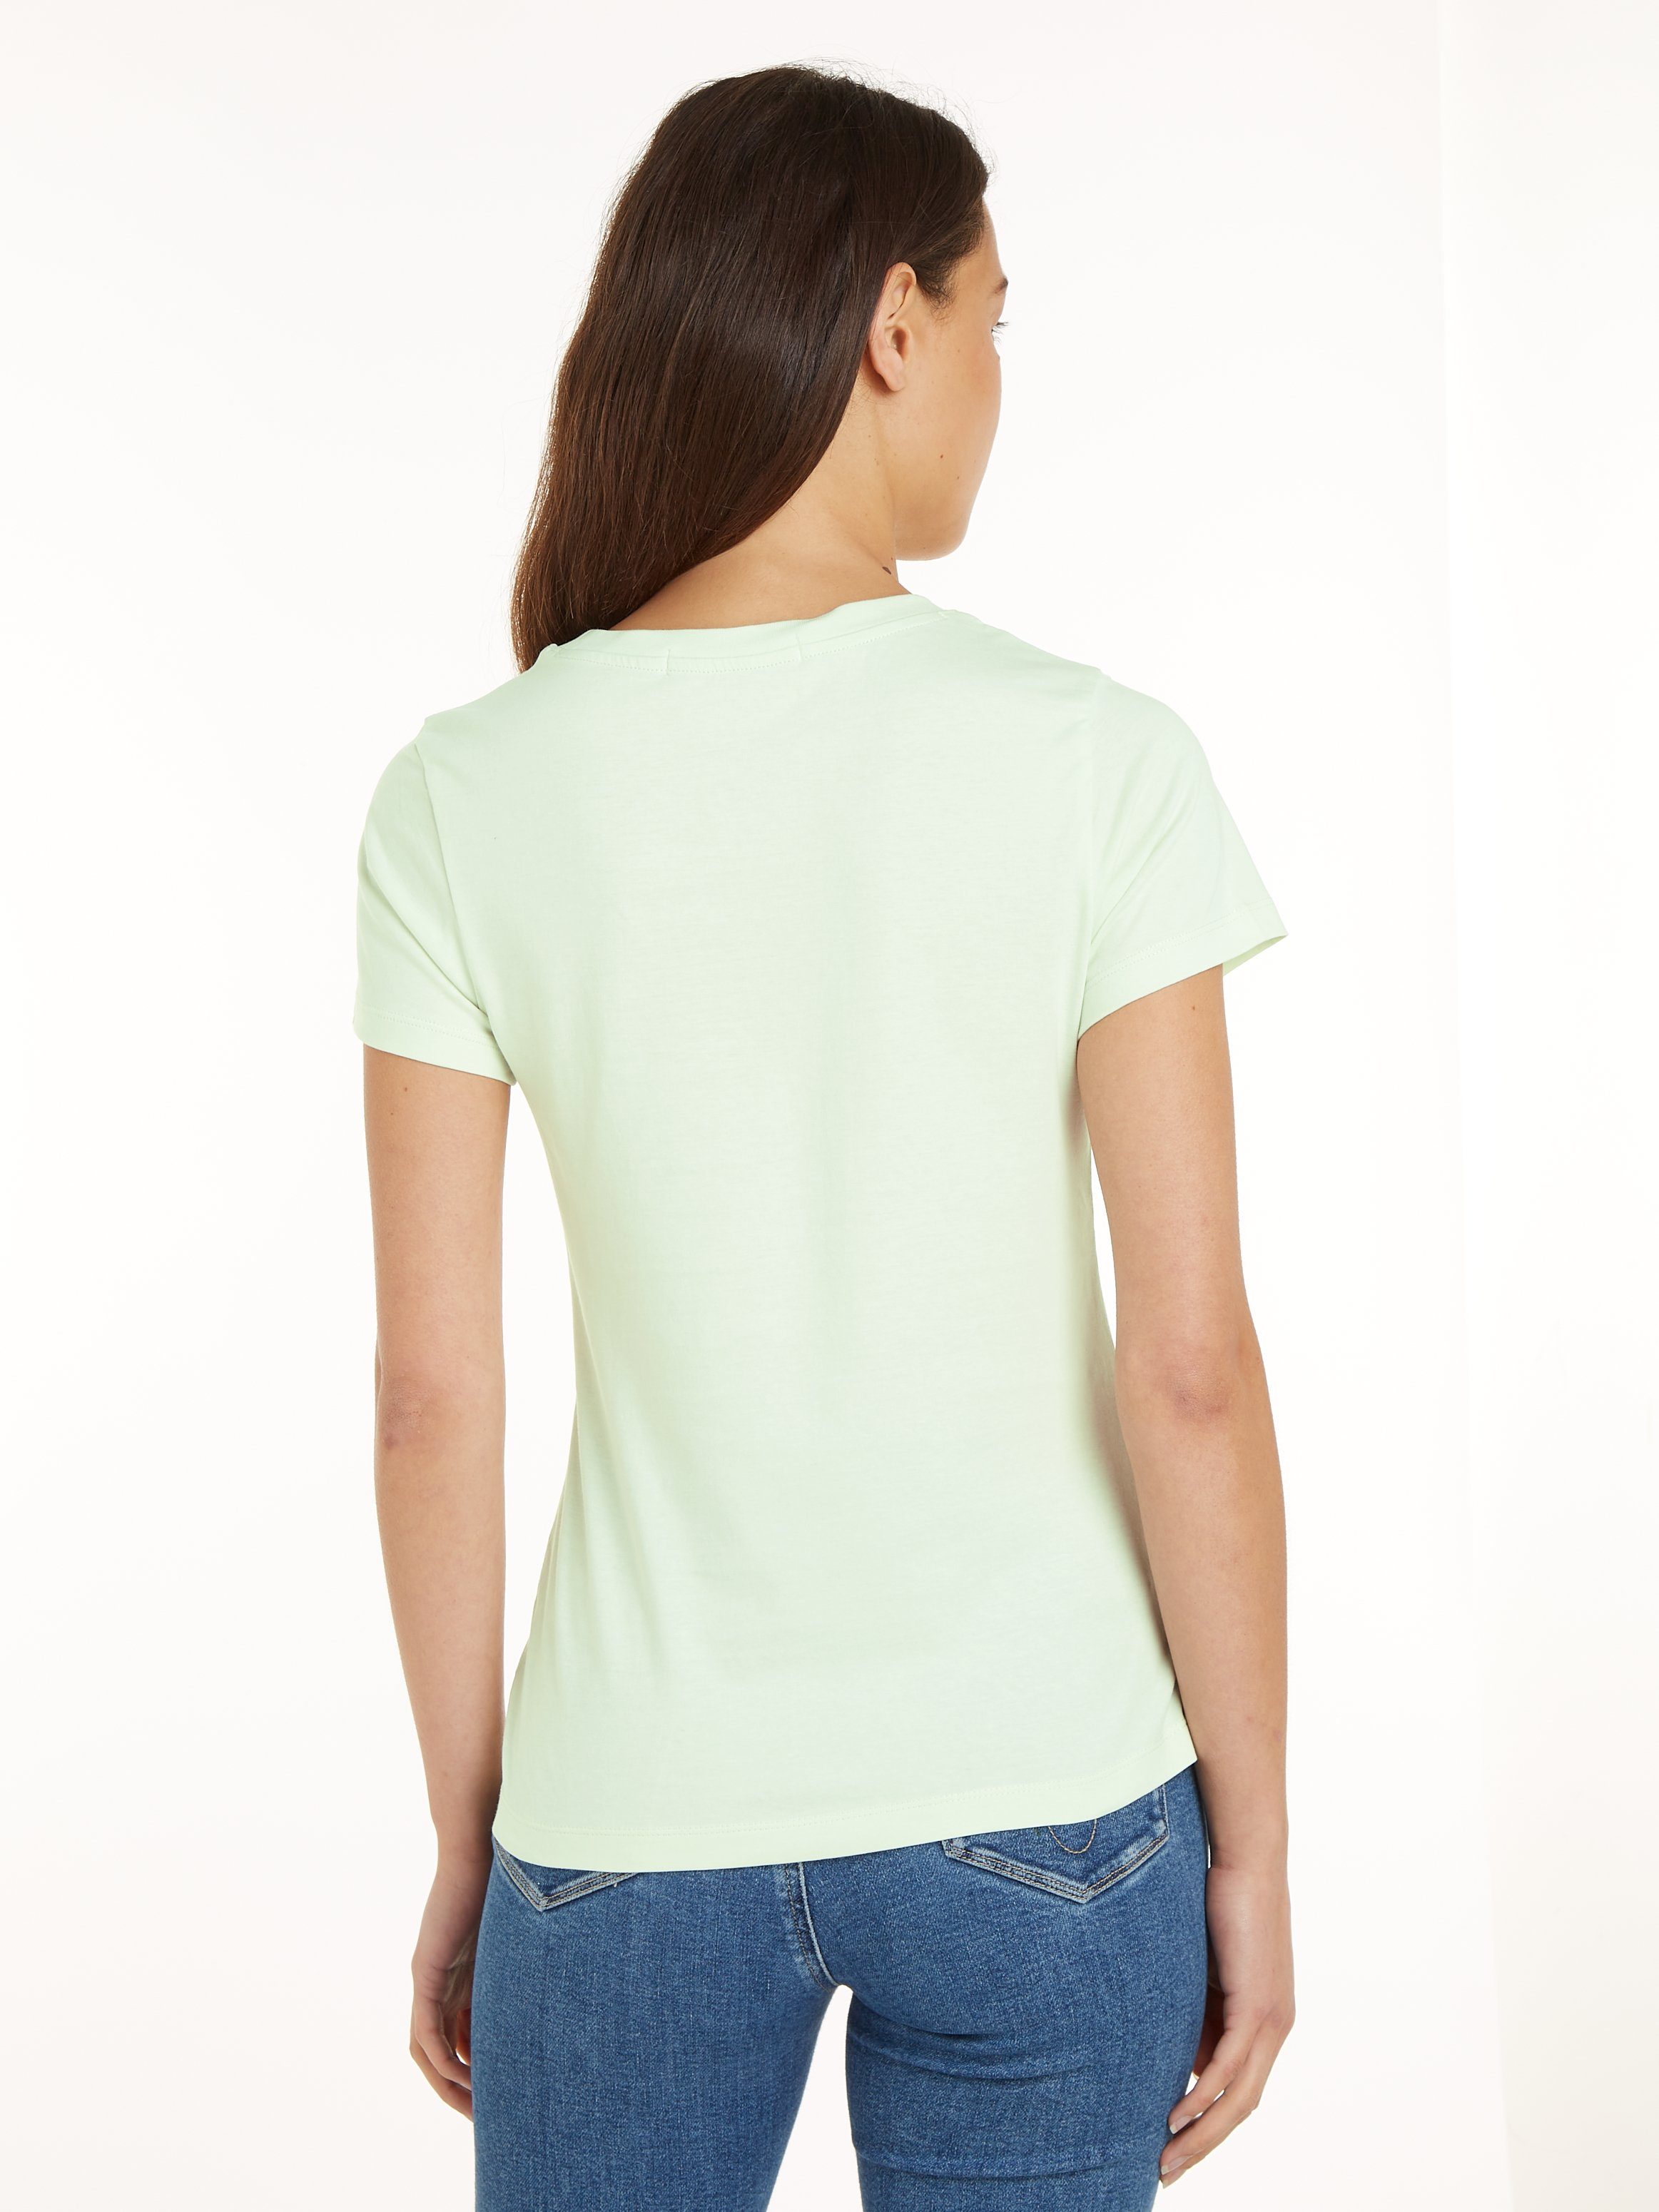 Klein Jeans grün T-Shirt Calvin